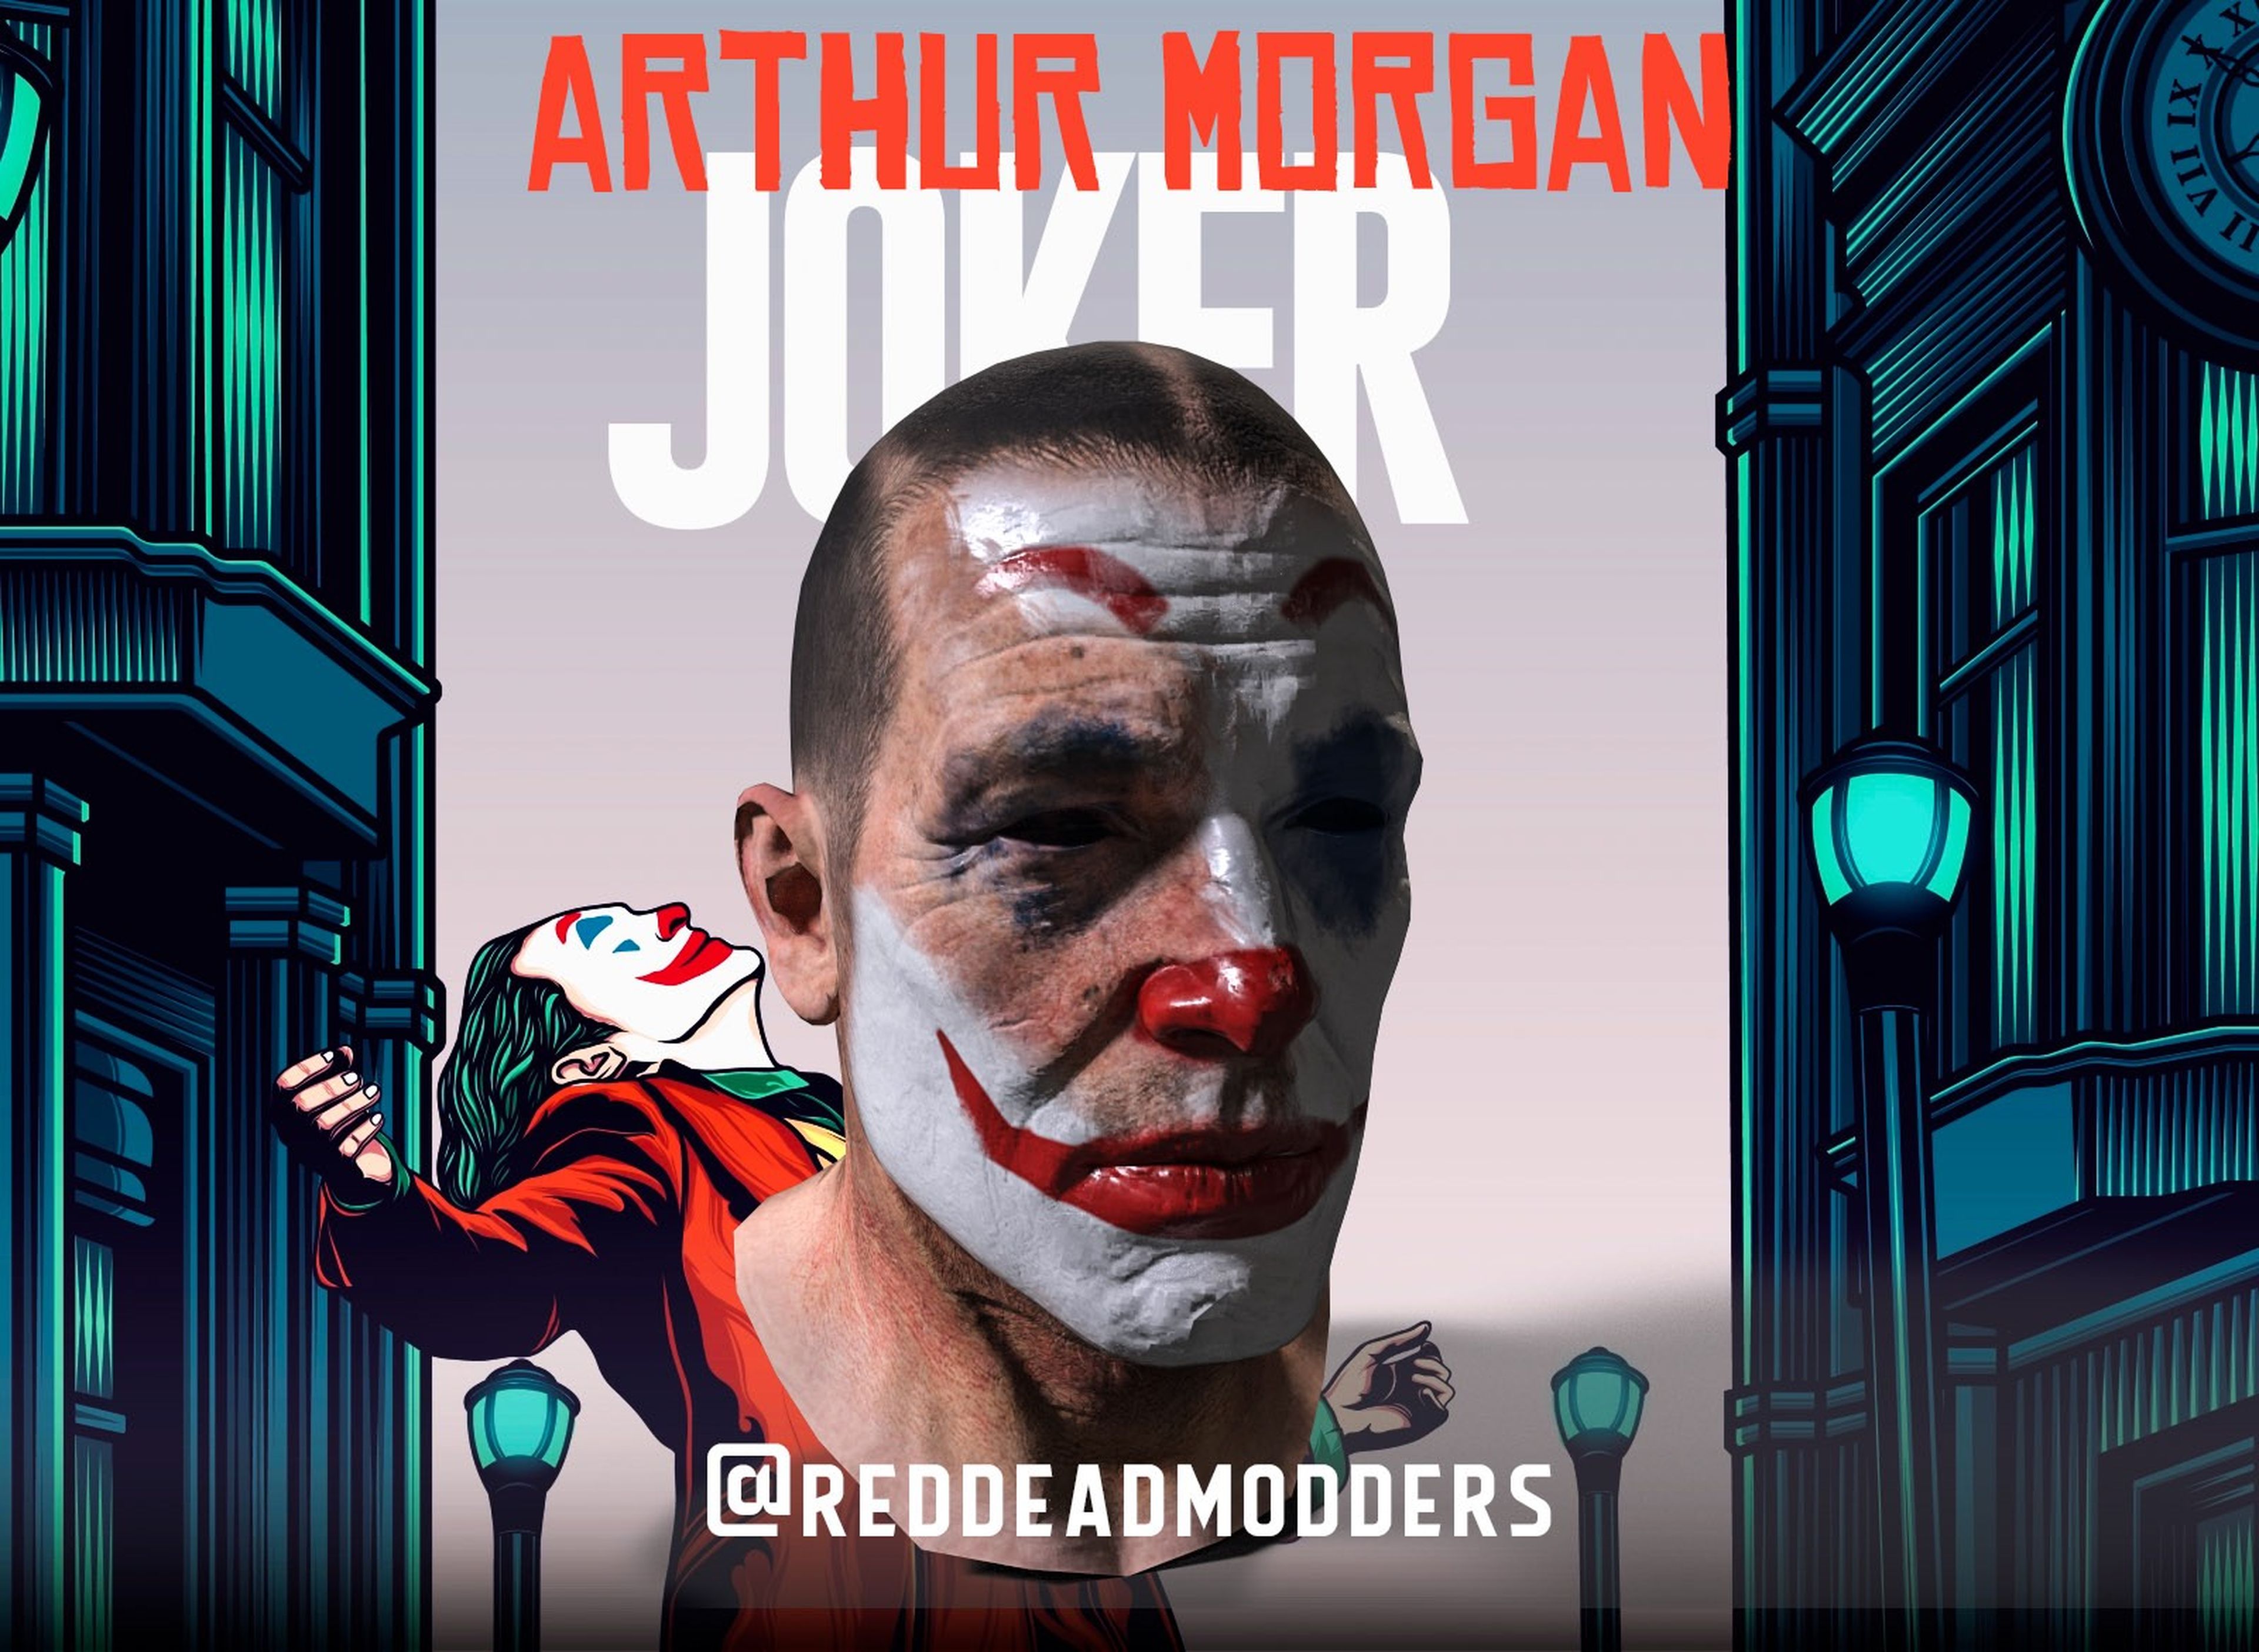 Arthur Morgan Joker